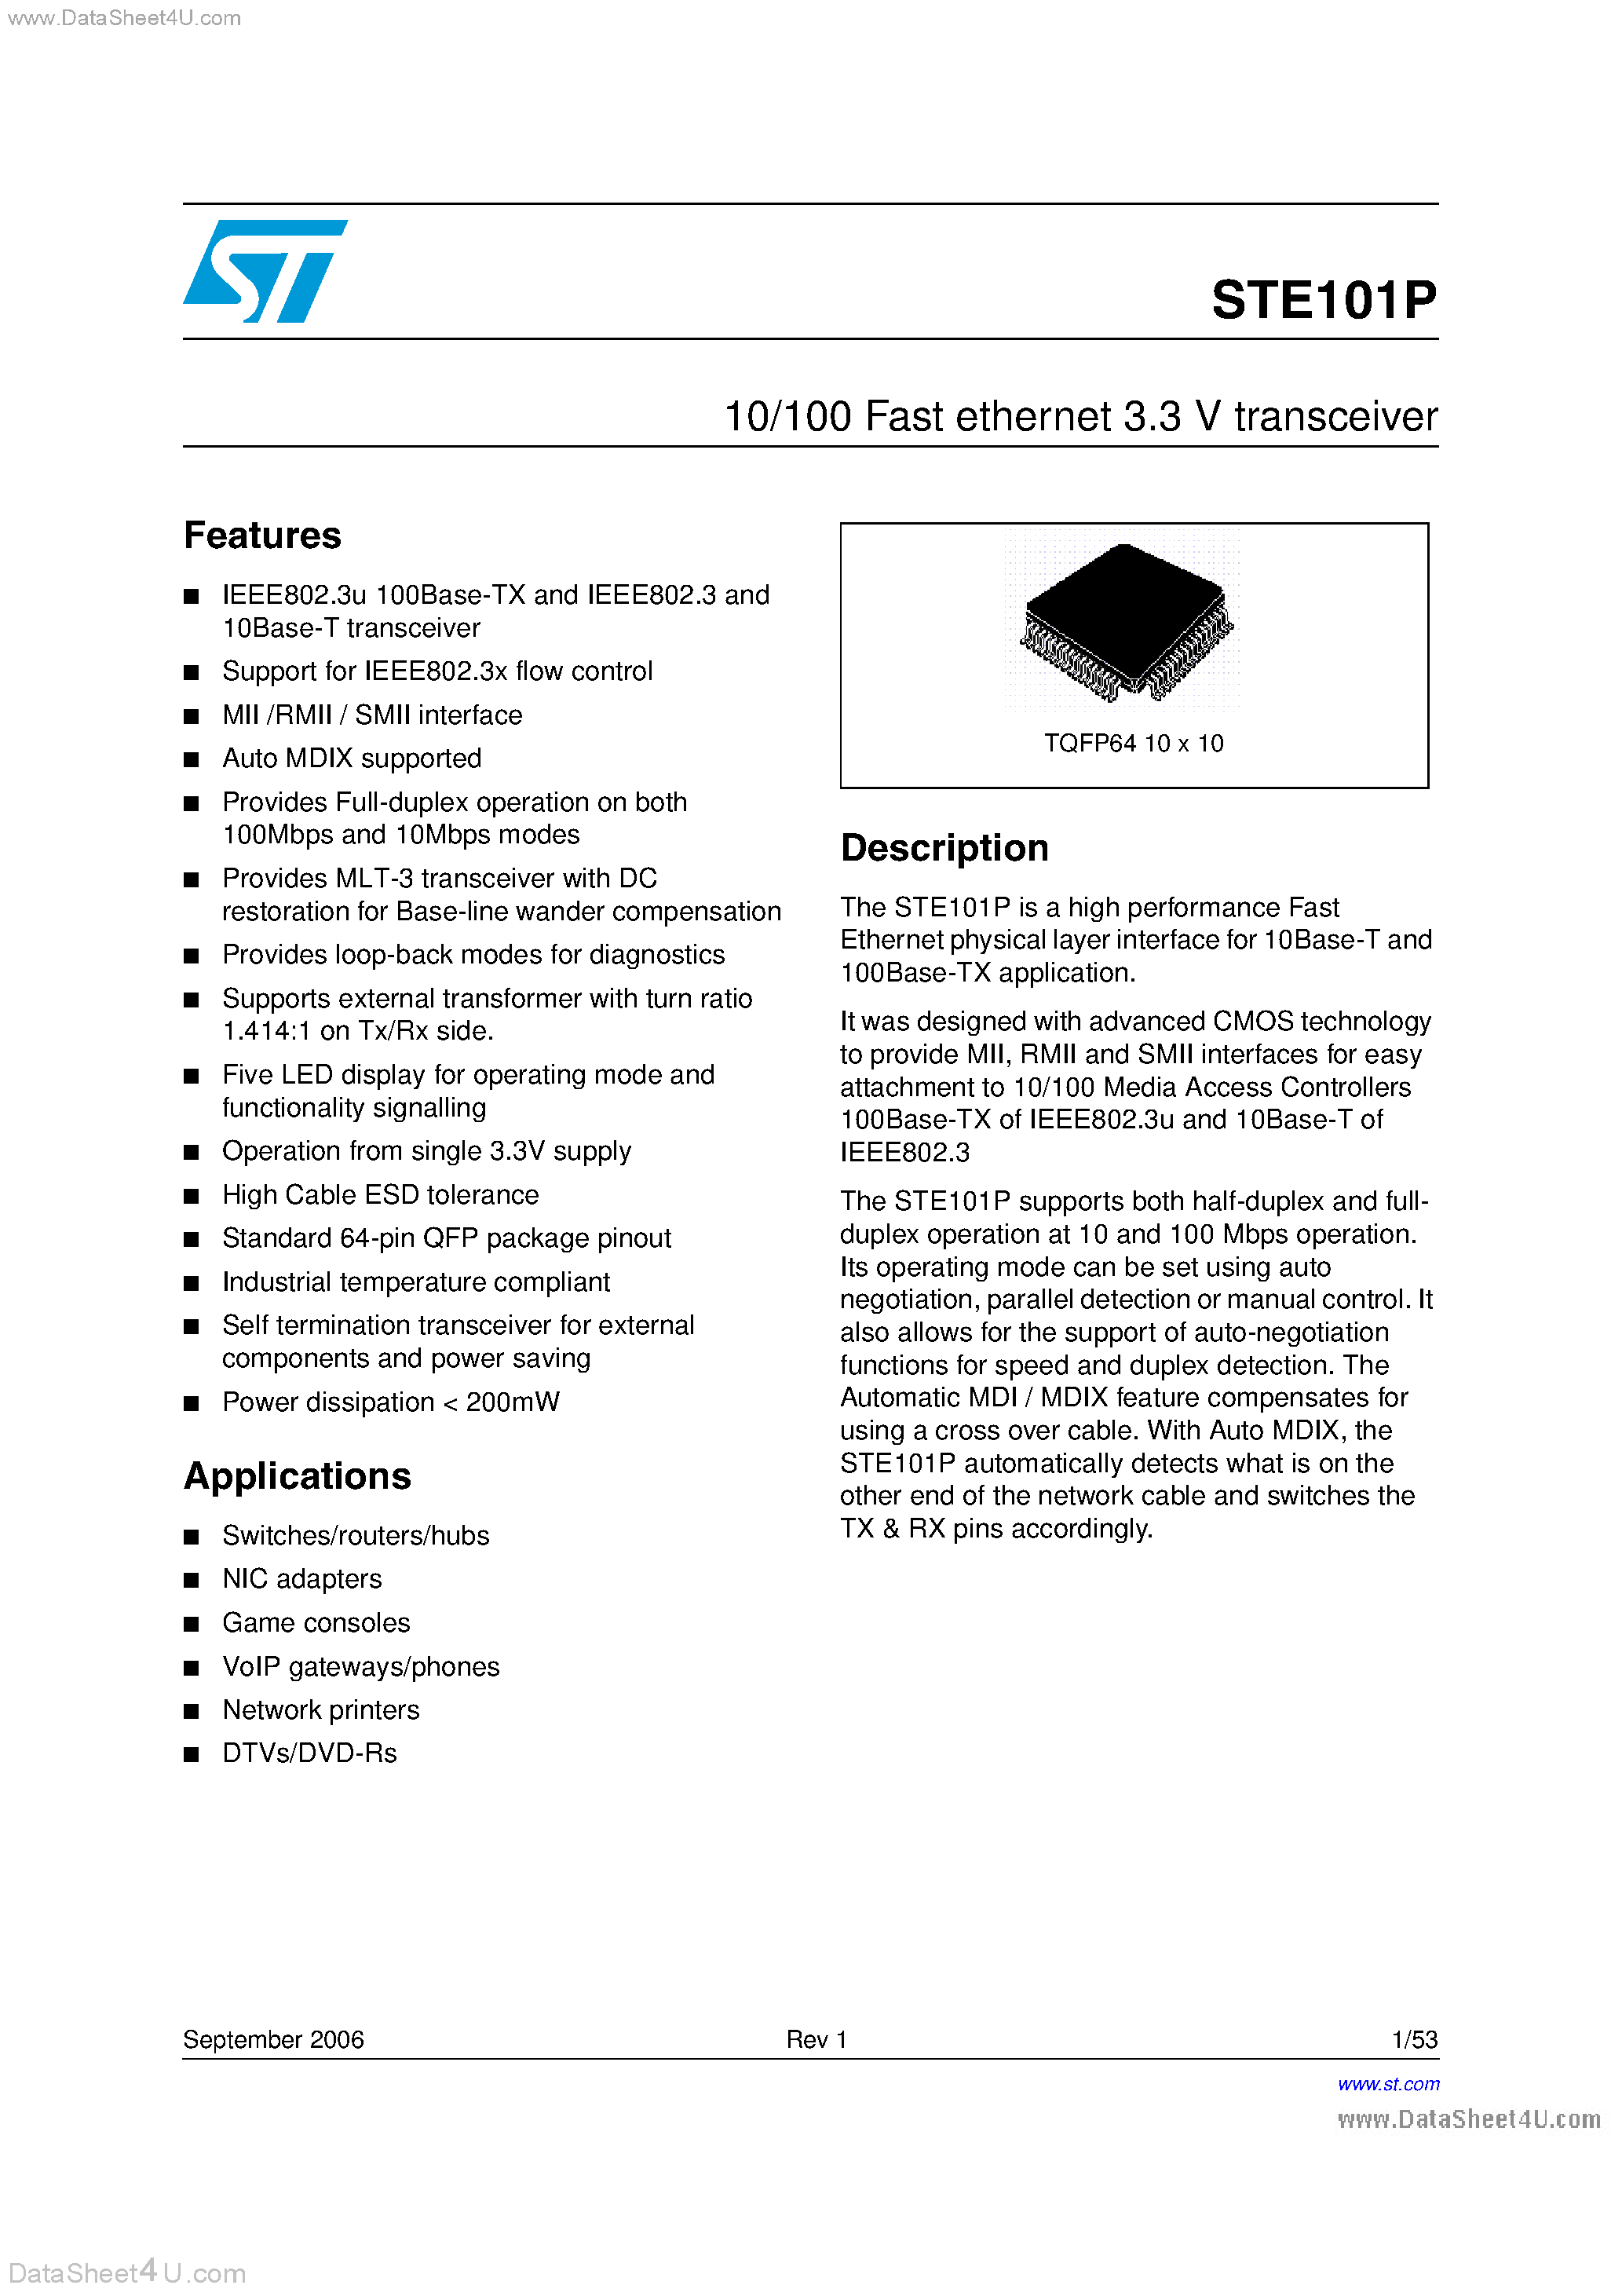 Даташит STE101P - 10/100 Fast Ethernet 3.3V Transceiver страница 1